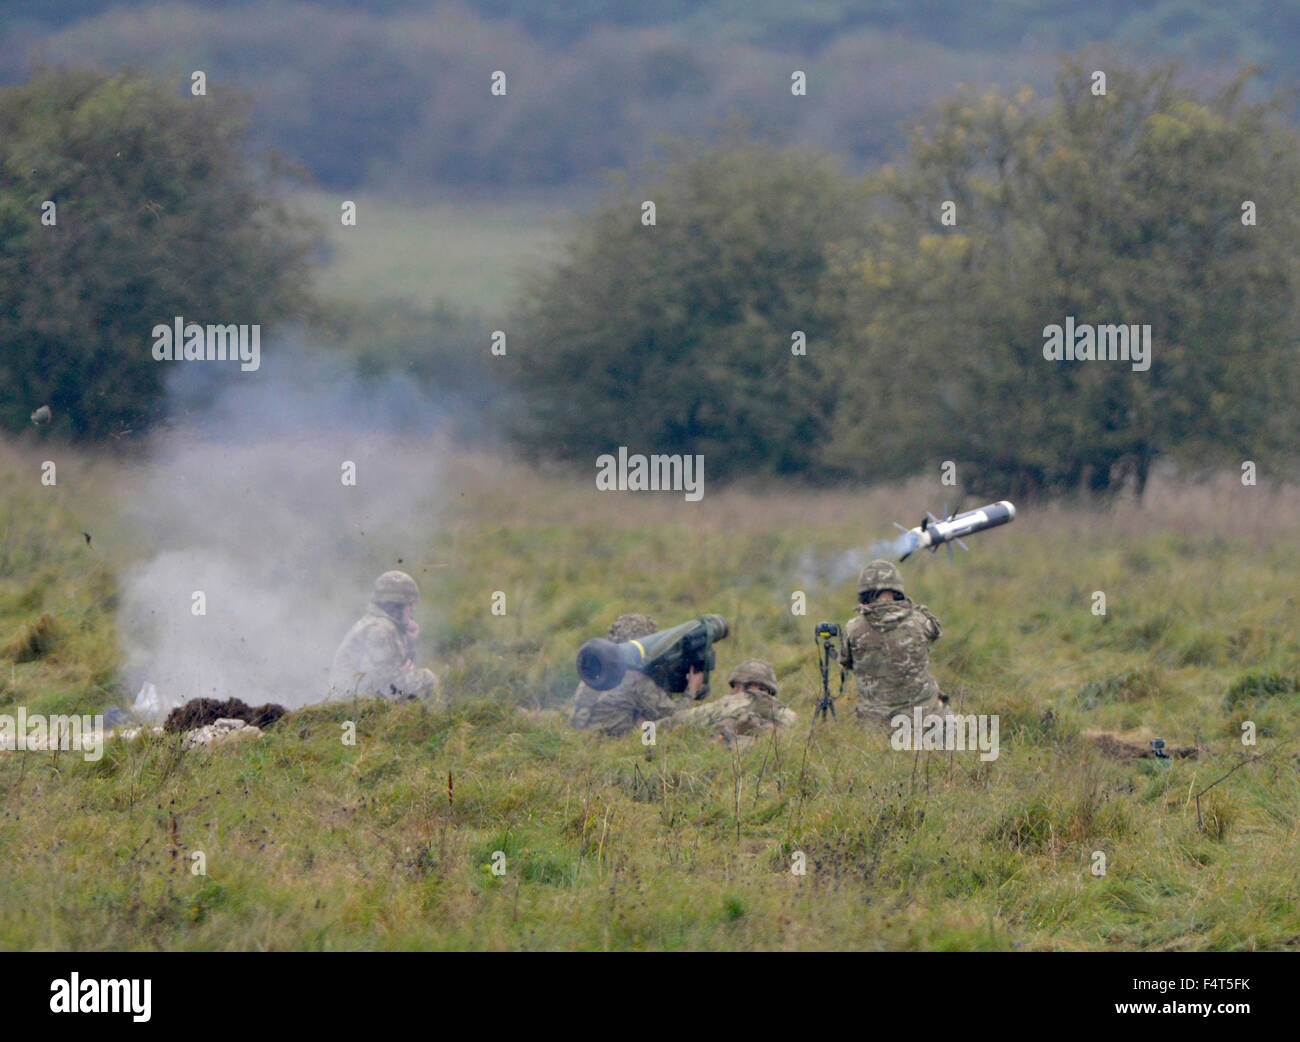 La démonstration de l'armée britannique un javelot tir antichar dans la plaine de Salisbury, Wiltshire, Angleterre, Royaume-Uni Banque D'Images